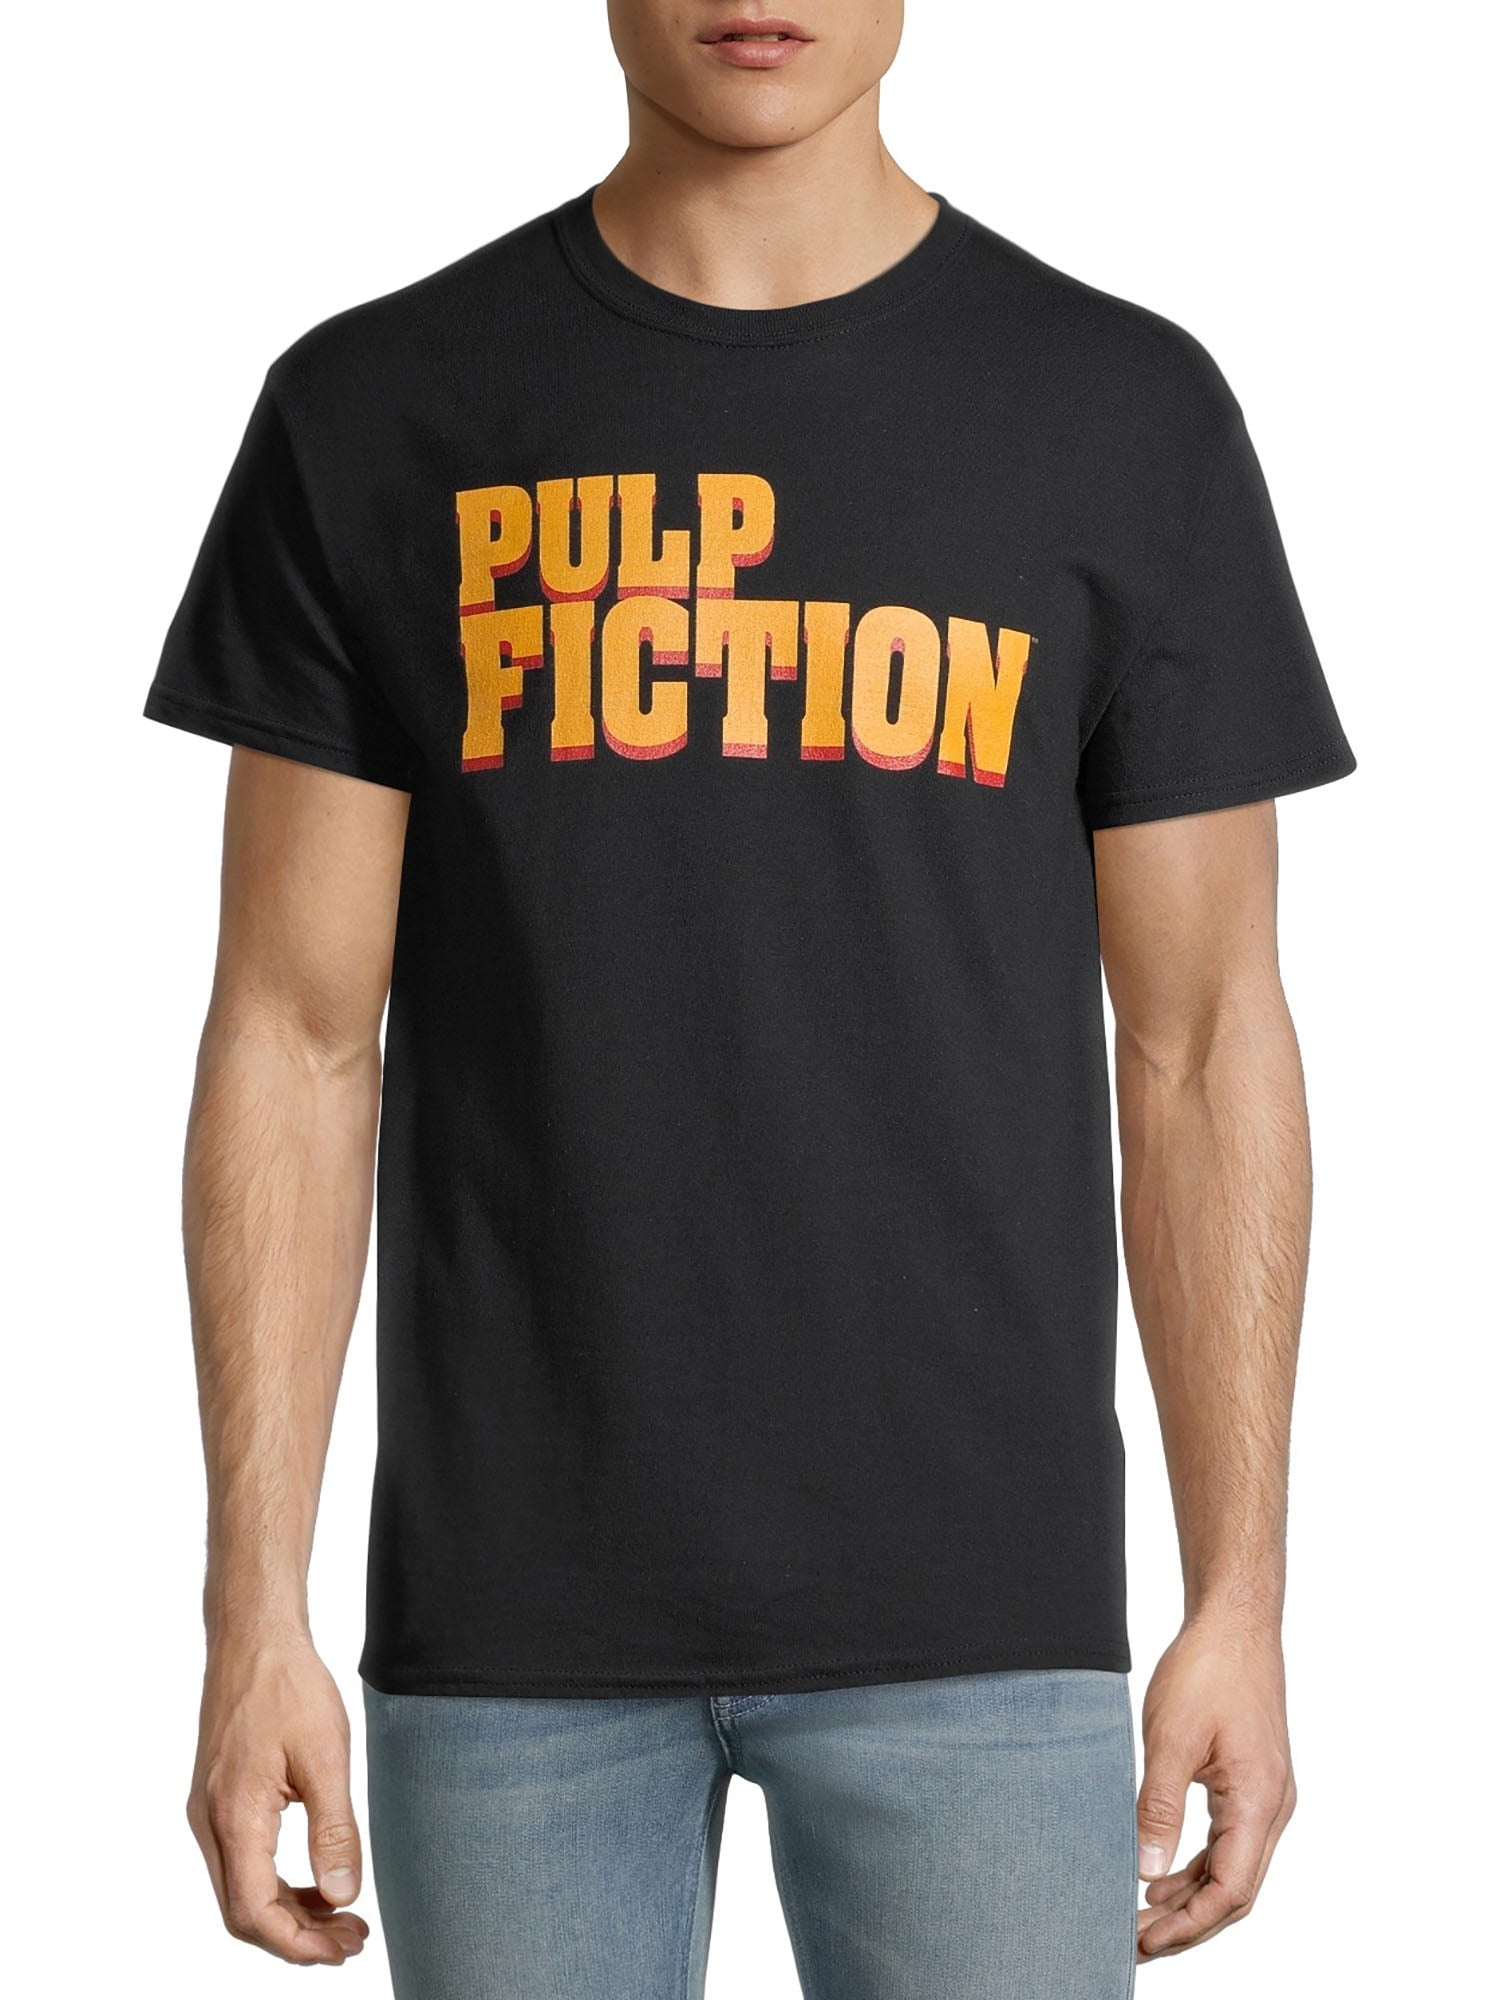 Pulp Fiction Classic Logo Men's and Big Men's Graphic T-Shirt - Walmart.com